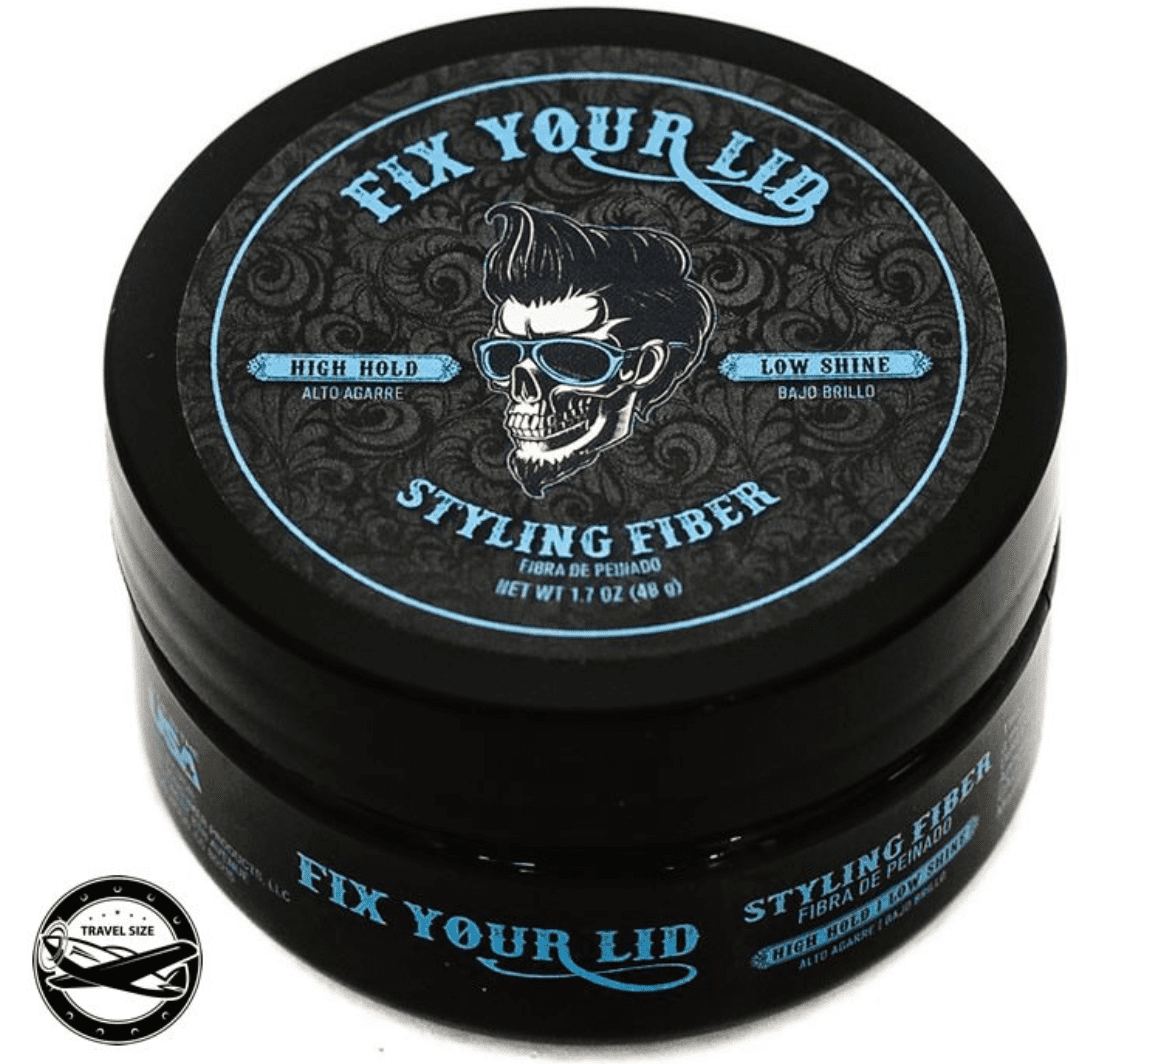 Fix Your Lid Styling Fiber - 3.75 oz